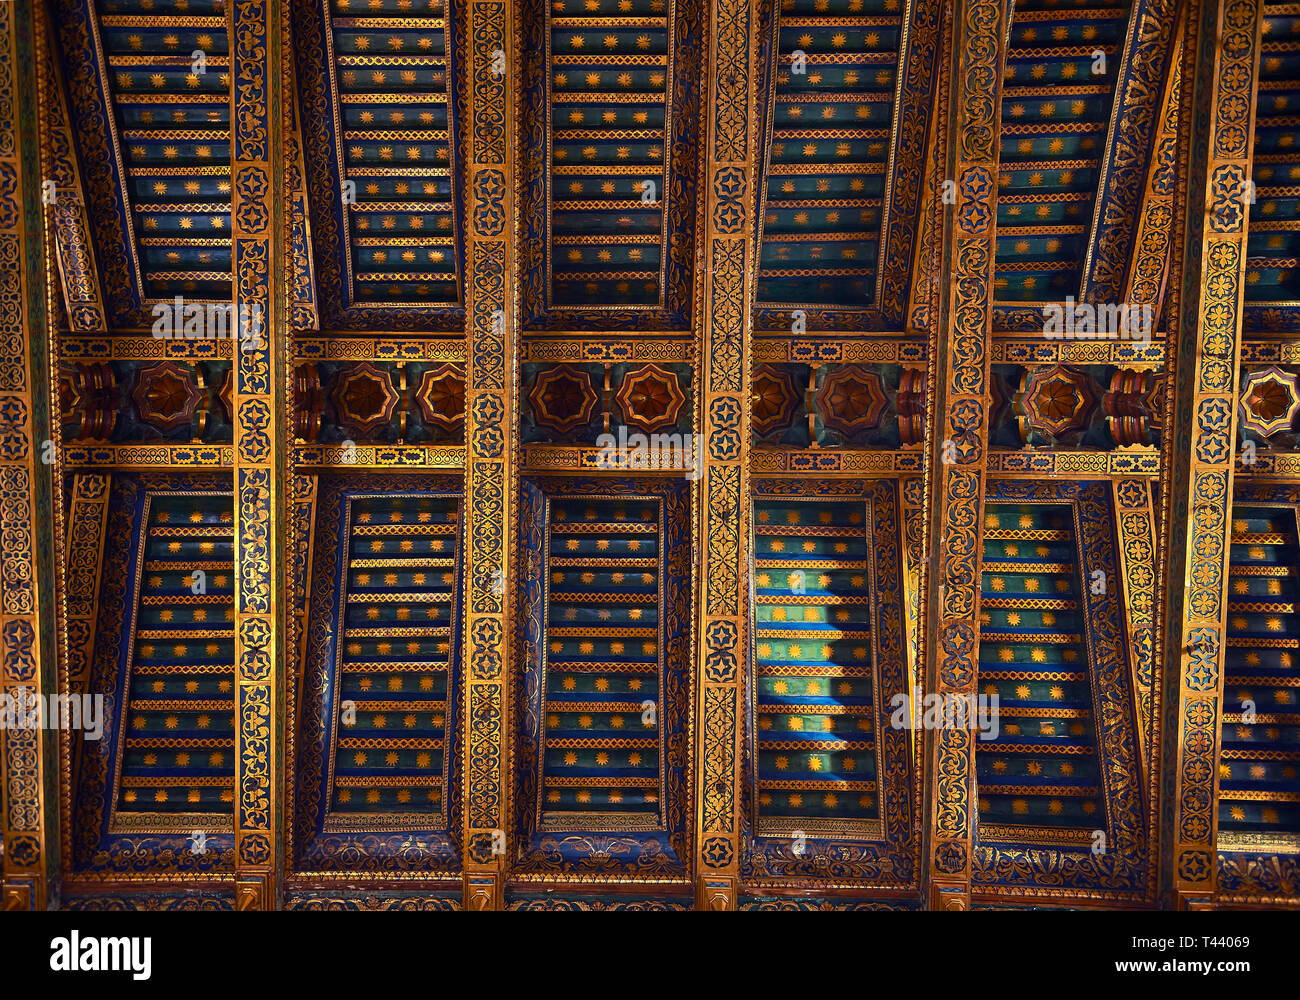 Poutres de toit décoratif de la cathédrale médiévale d'Norman-Byzantine de Monreale, province de Palerme, Sicile, Italie. Banque D'Images